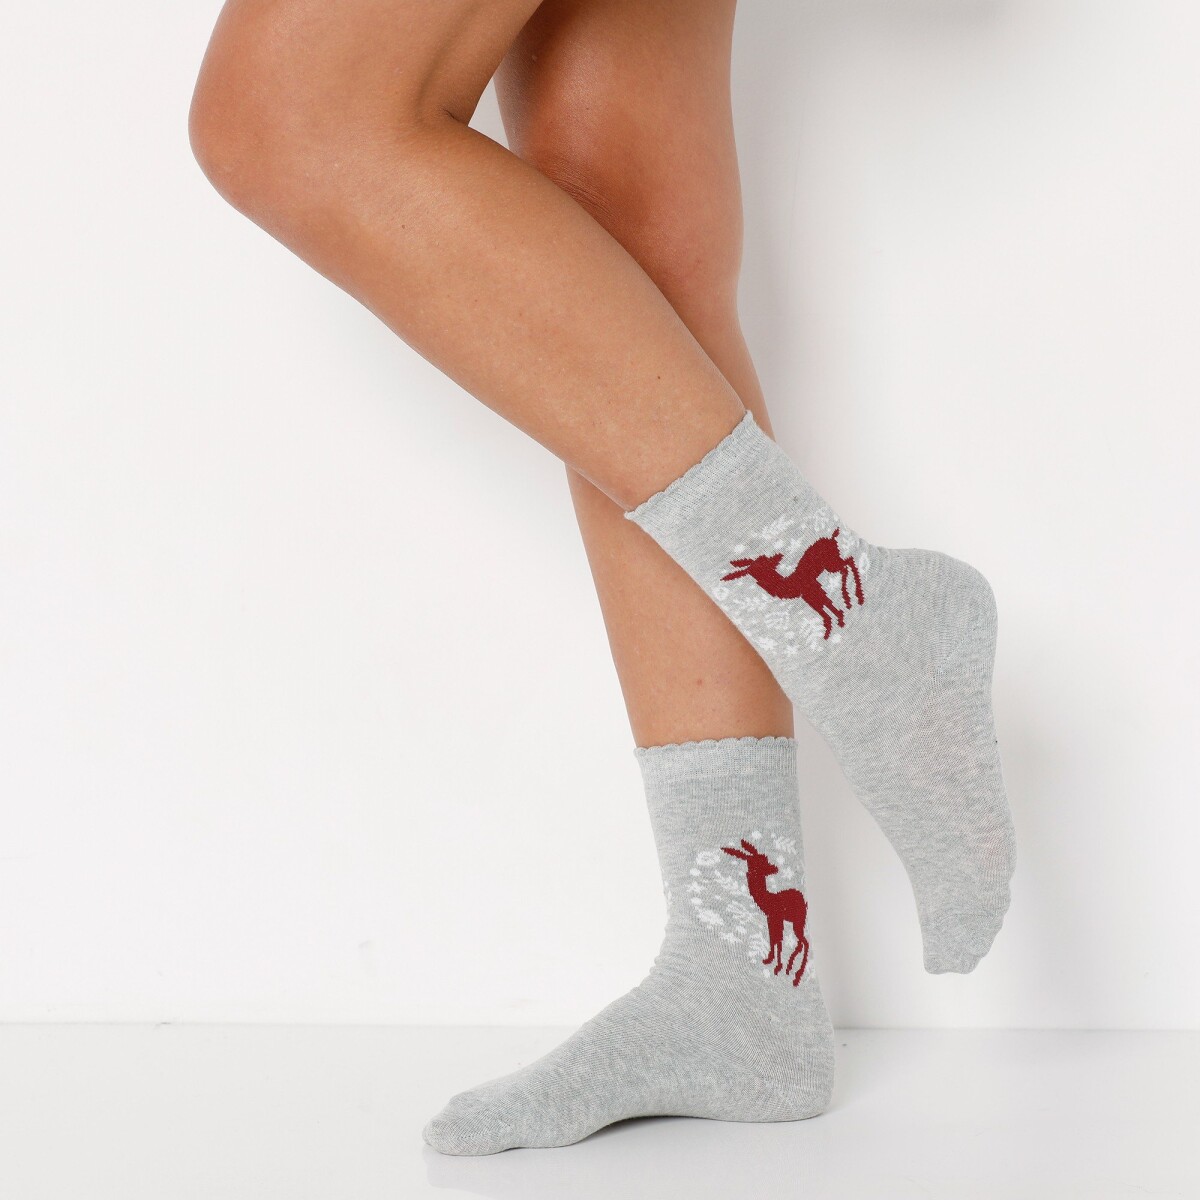 Blancheporte Sada 5 párů ponožek s vánočními motivy bordóšedá 3538